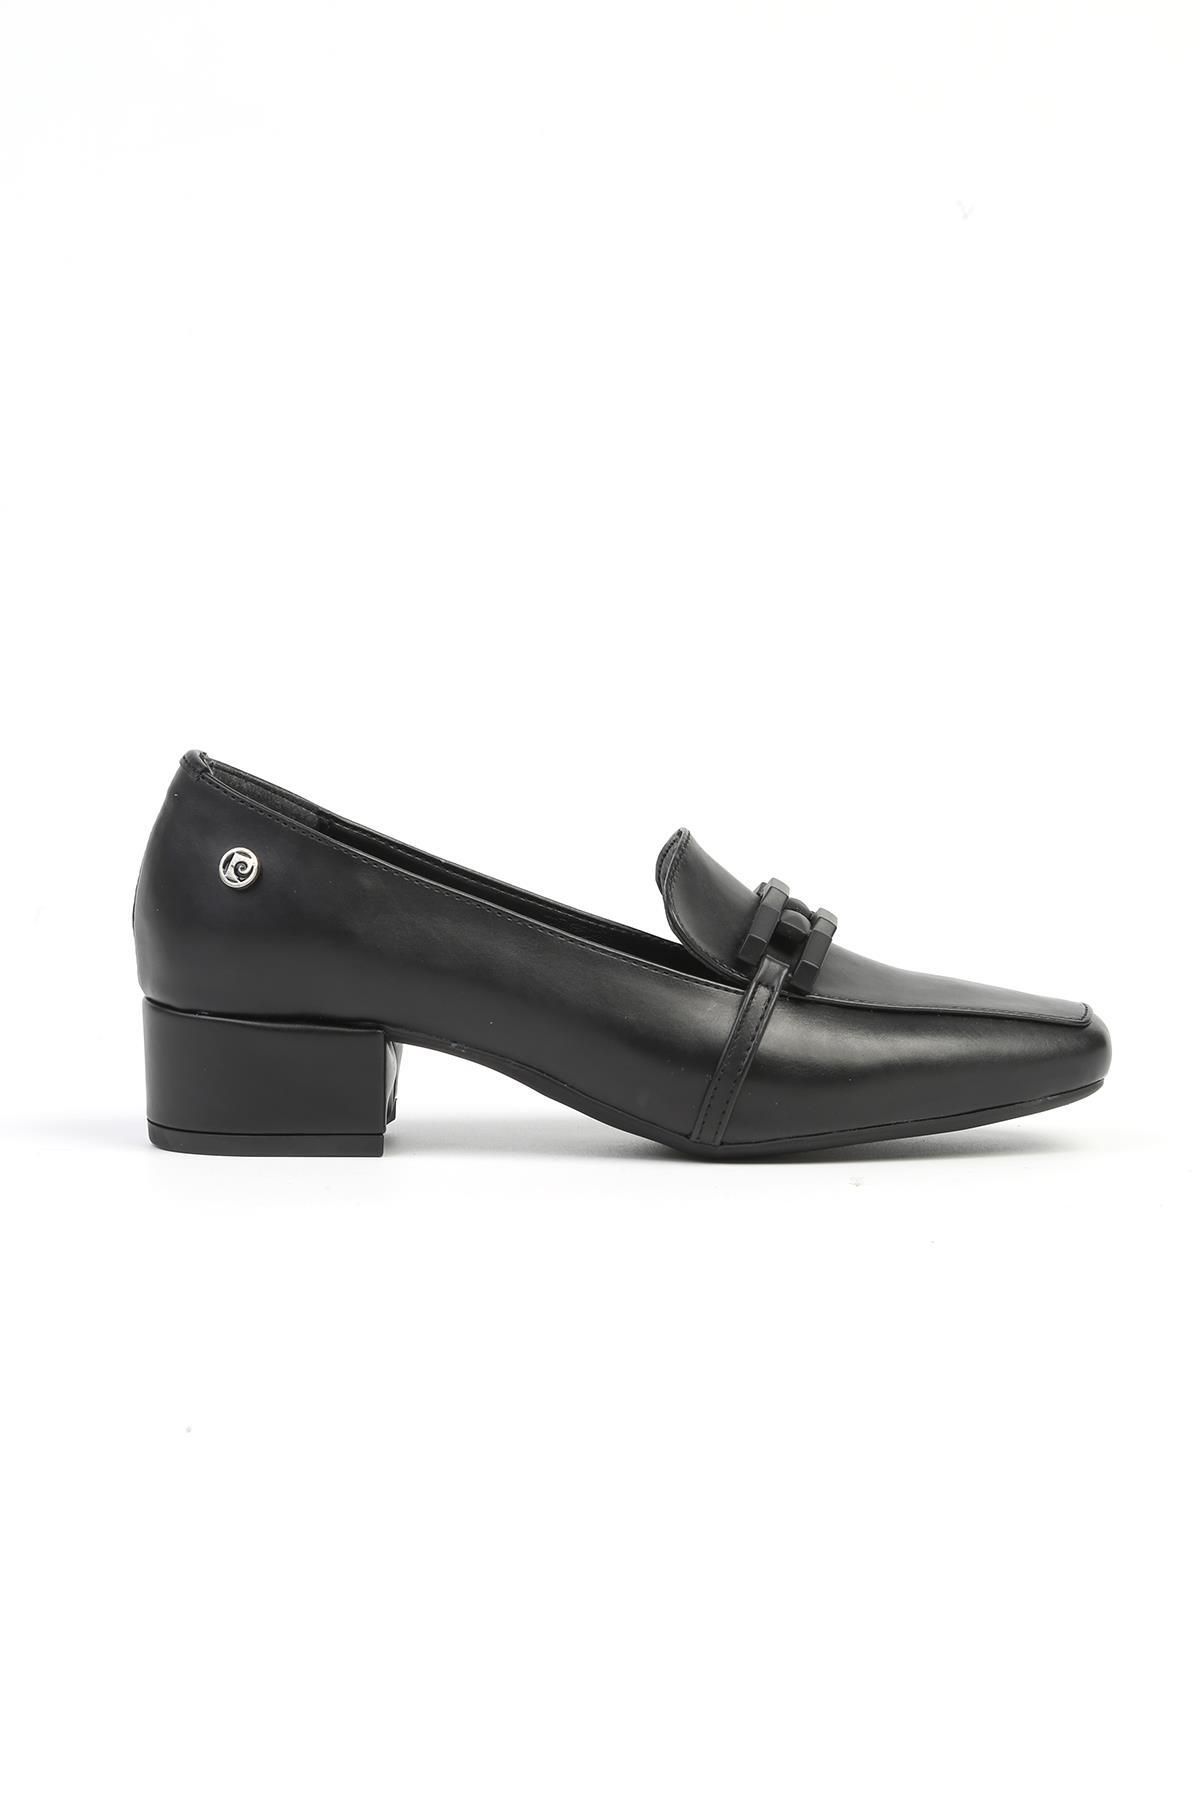 Pierre Cardin ® | PC-52537 - 3592 Siyah Cilt - Kadın Topuklu Ayakkabı